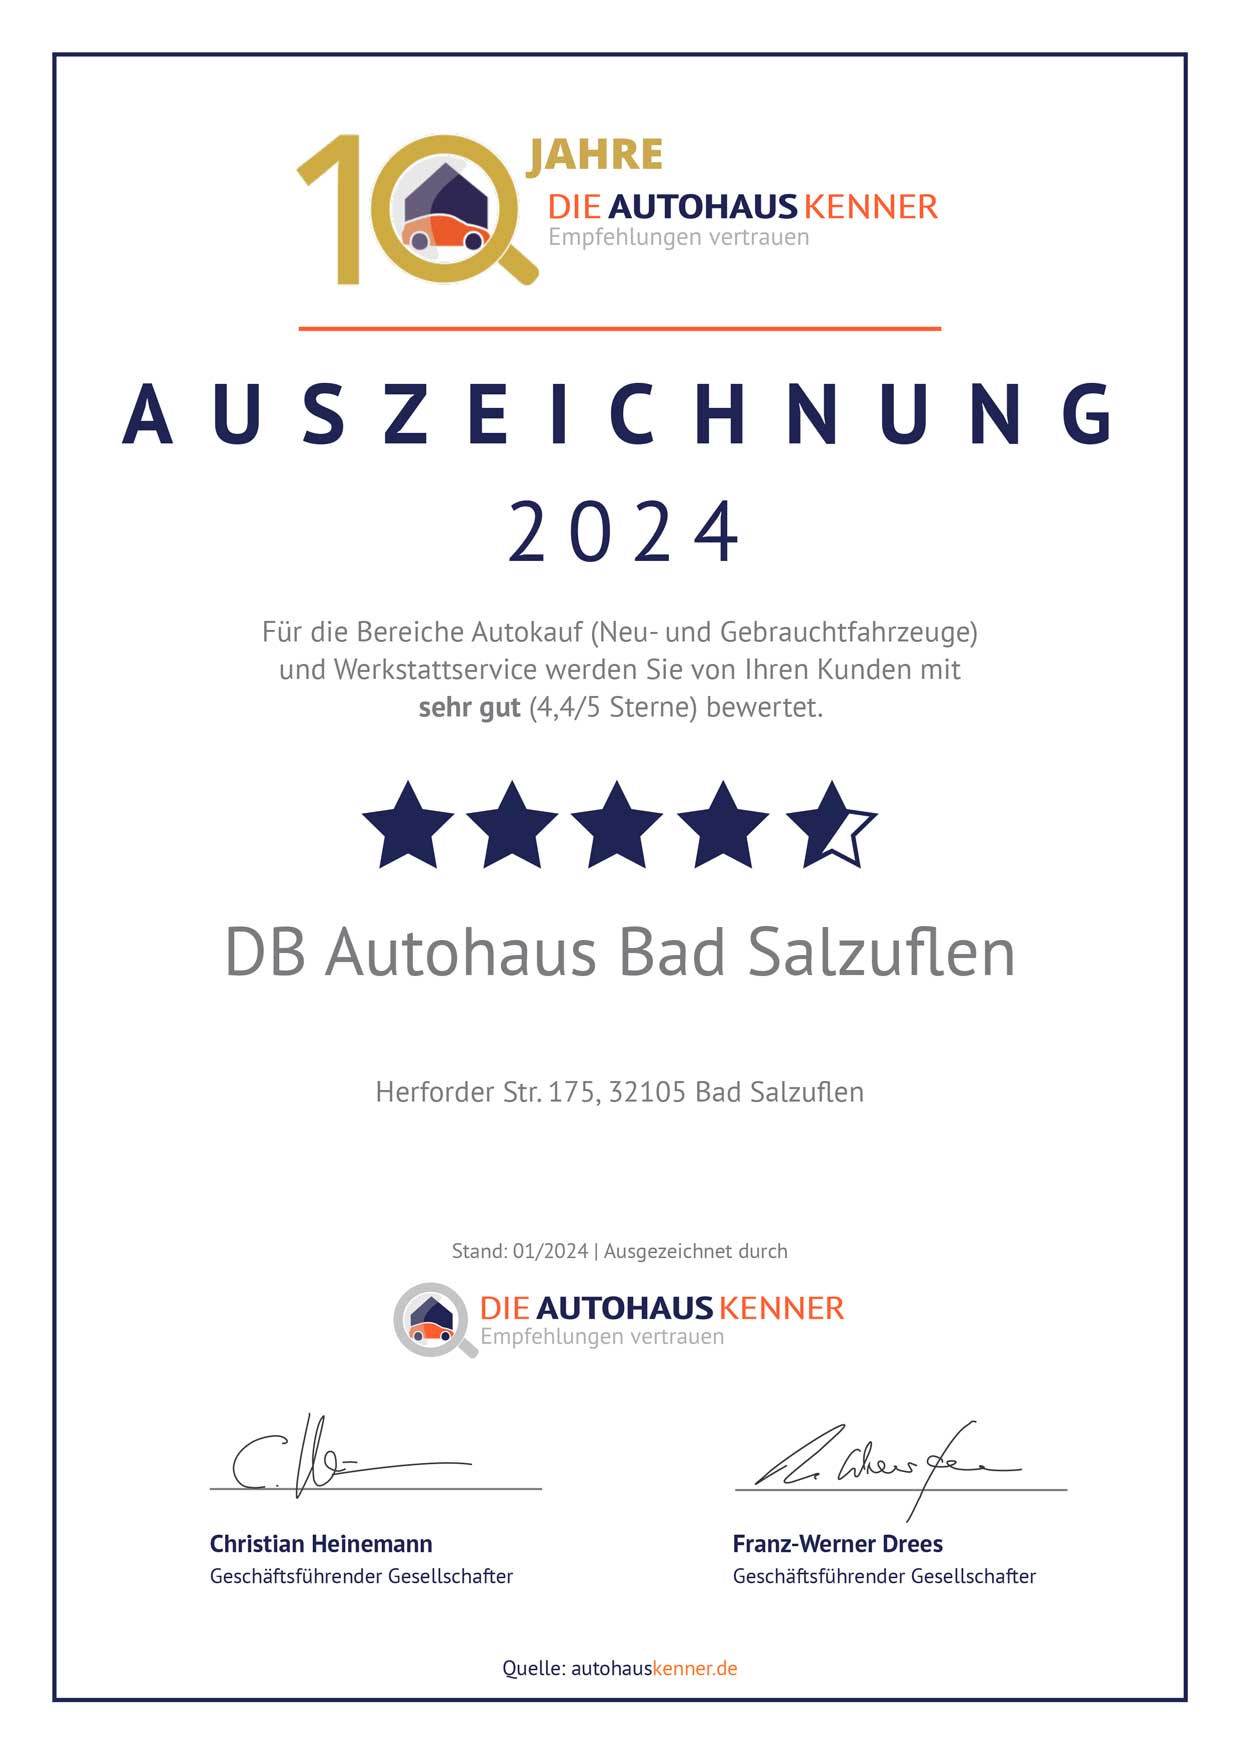 Auszeichnung von Autohauskenner für DB Autohaus Bad Salzuflen